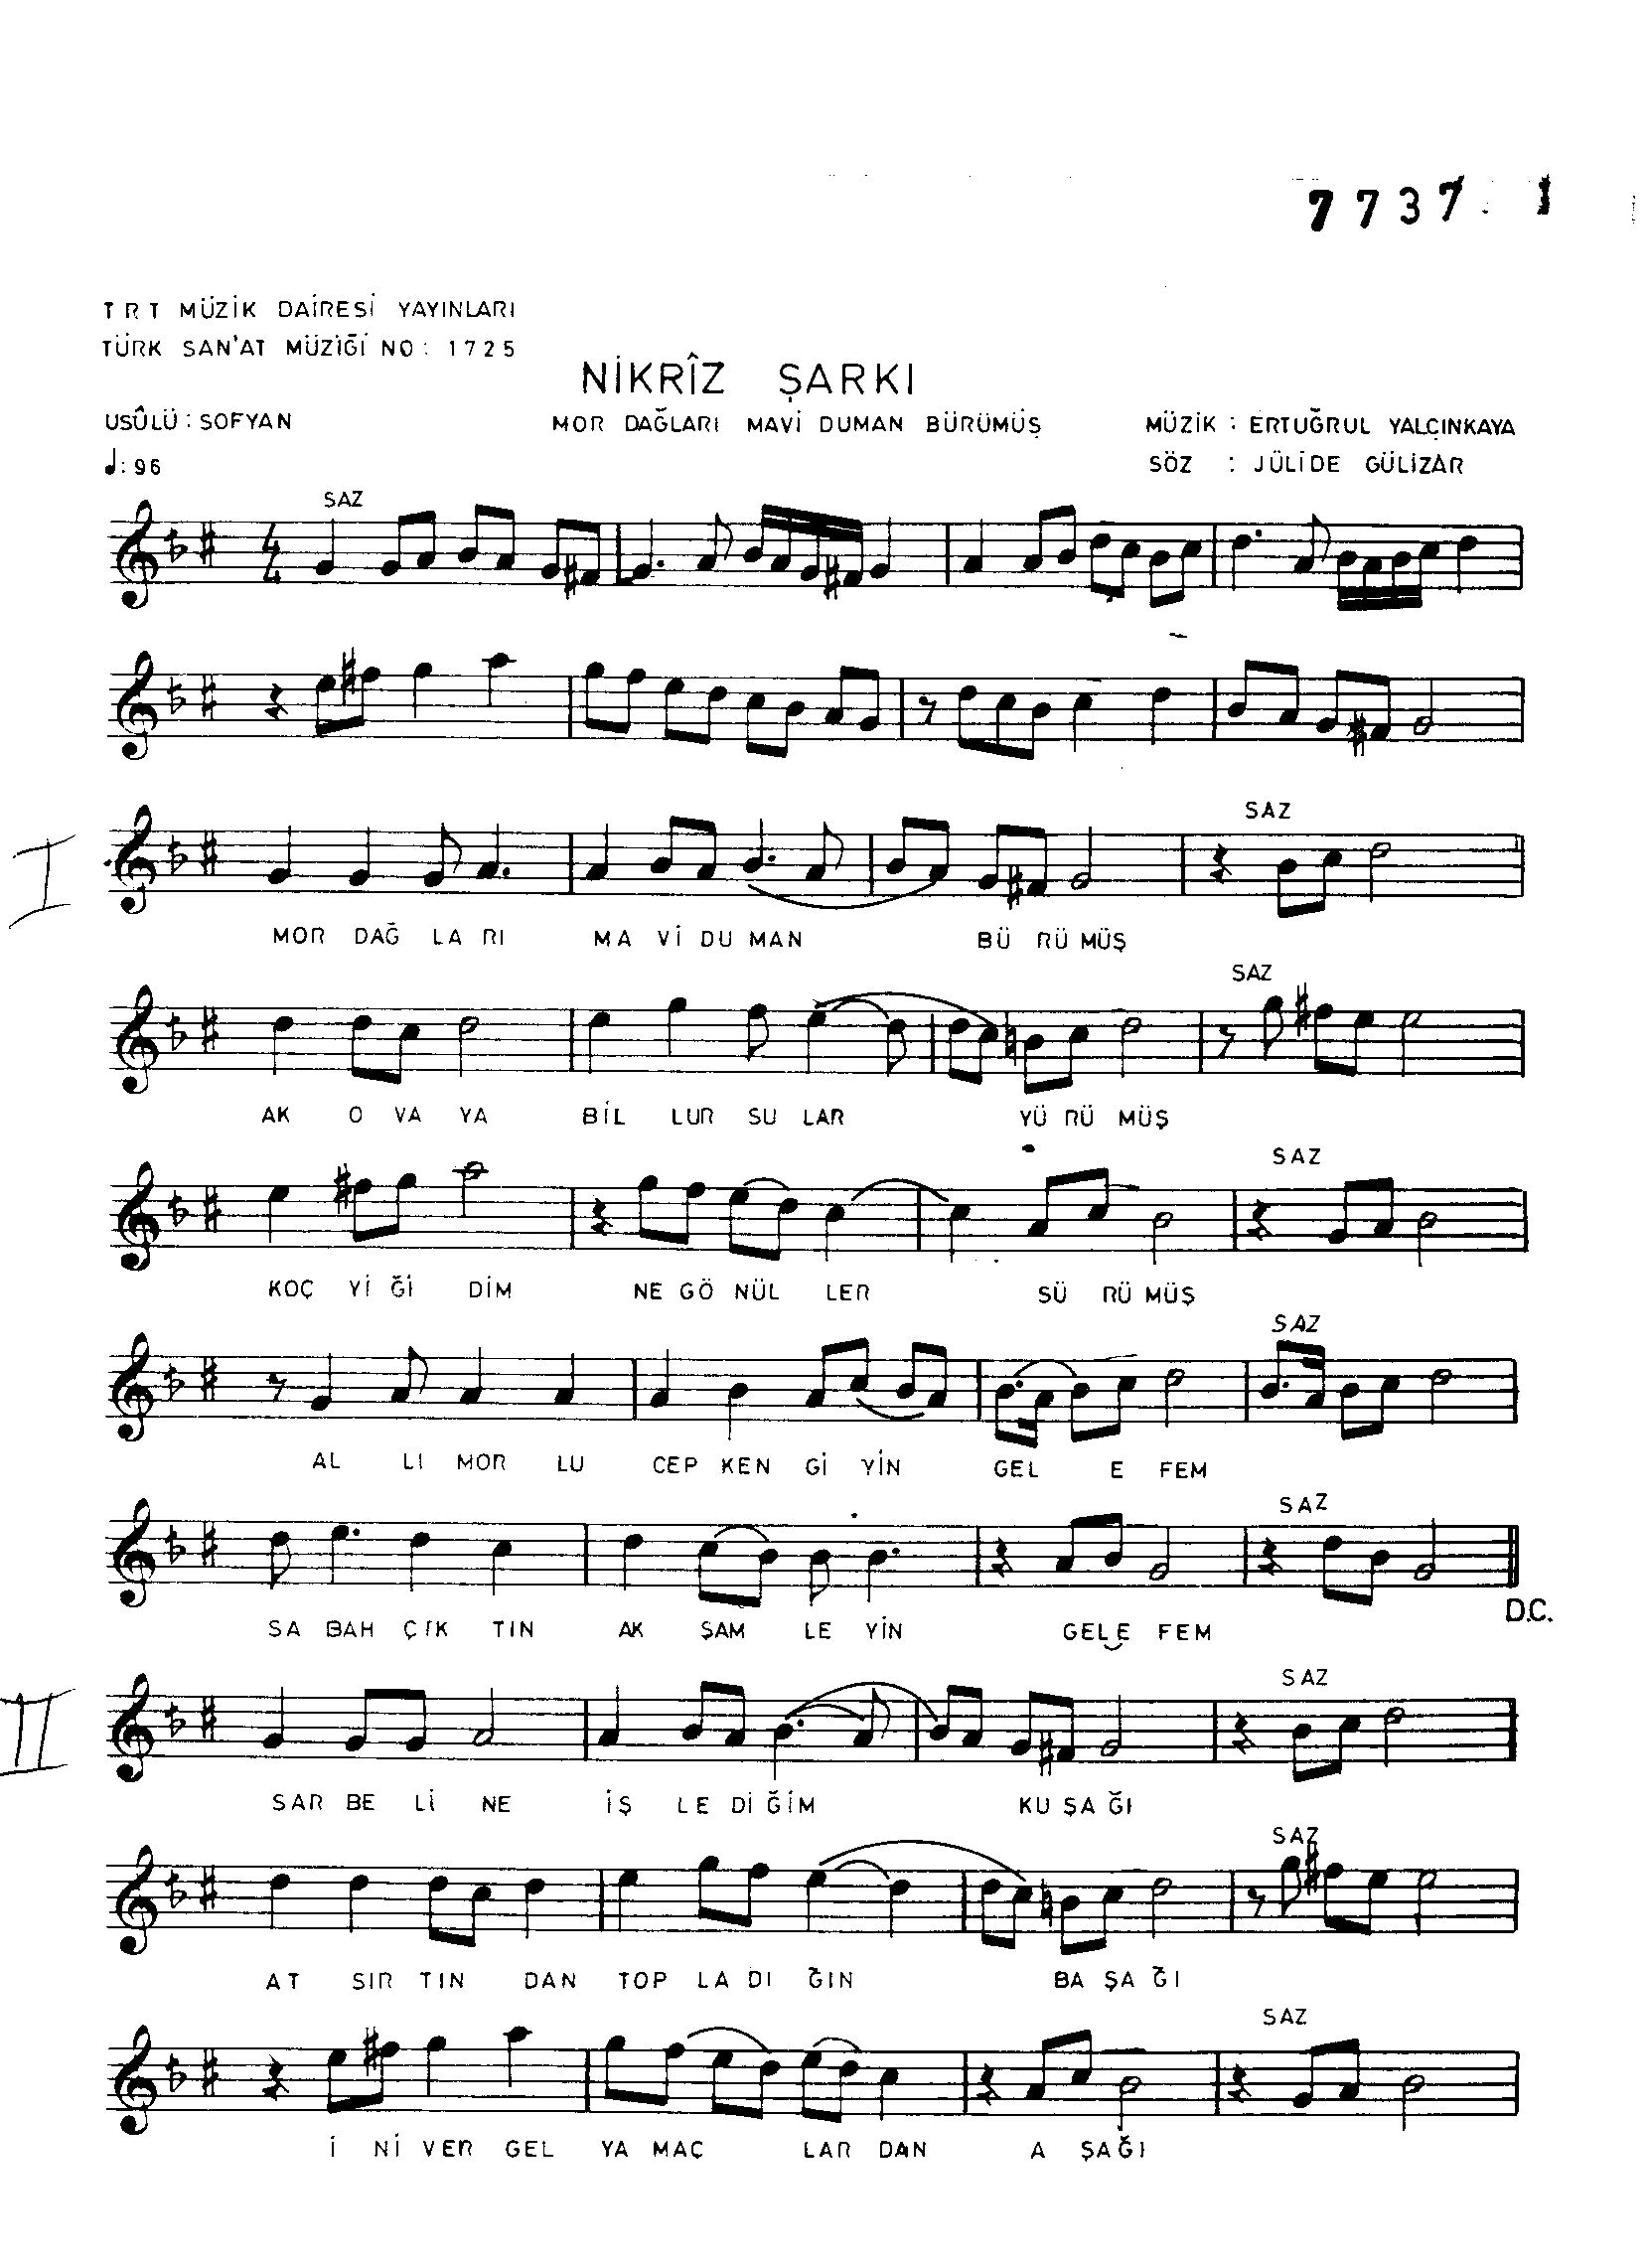 Nikrîz - Şarkı - Ertuğrul Yalçınkaya - Sayfa 1